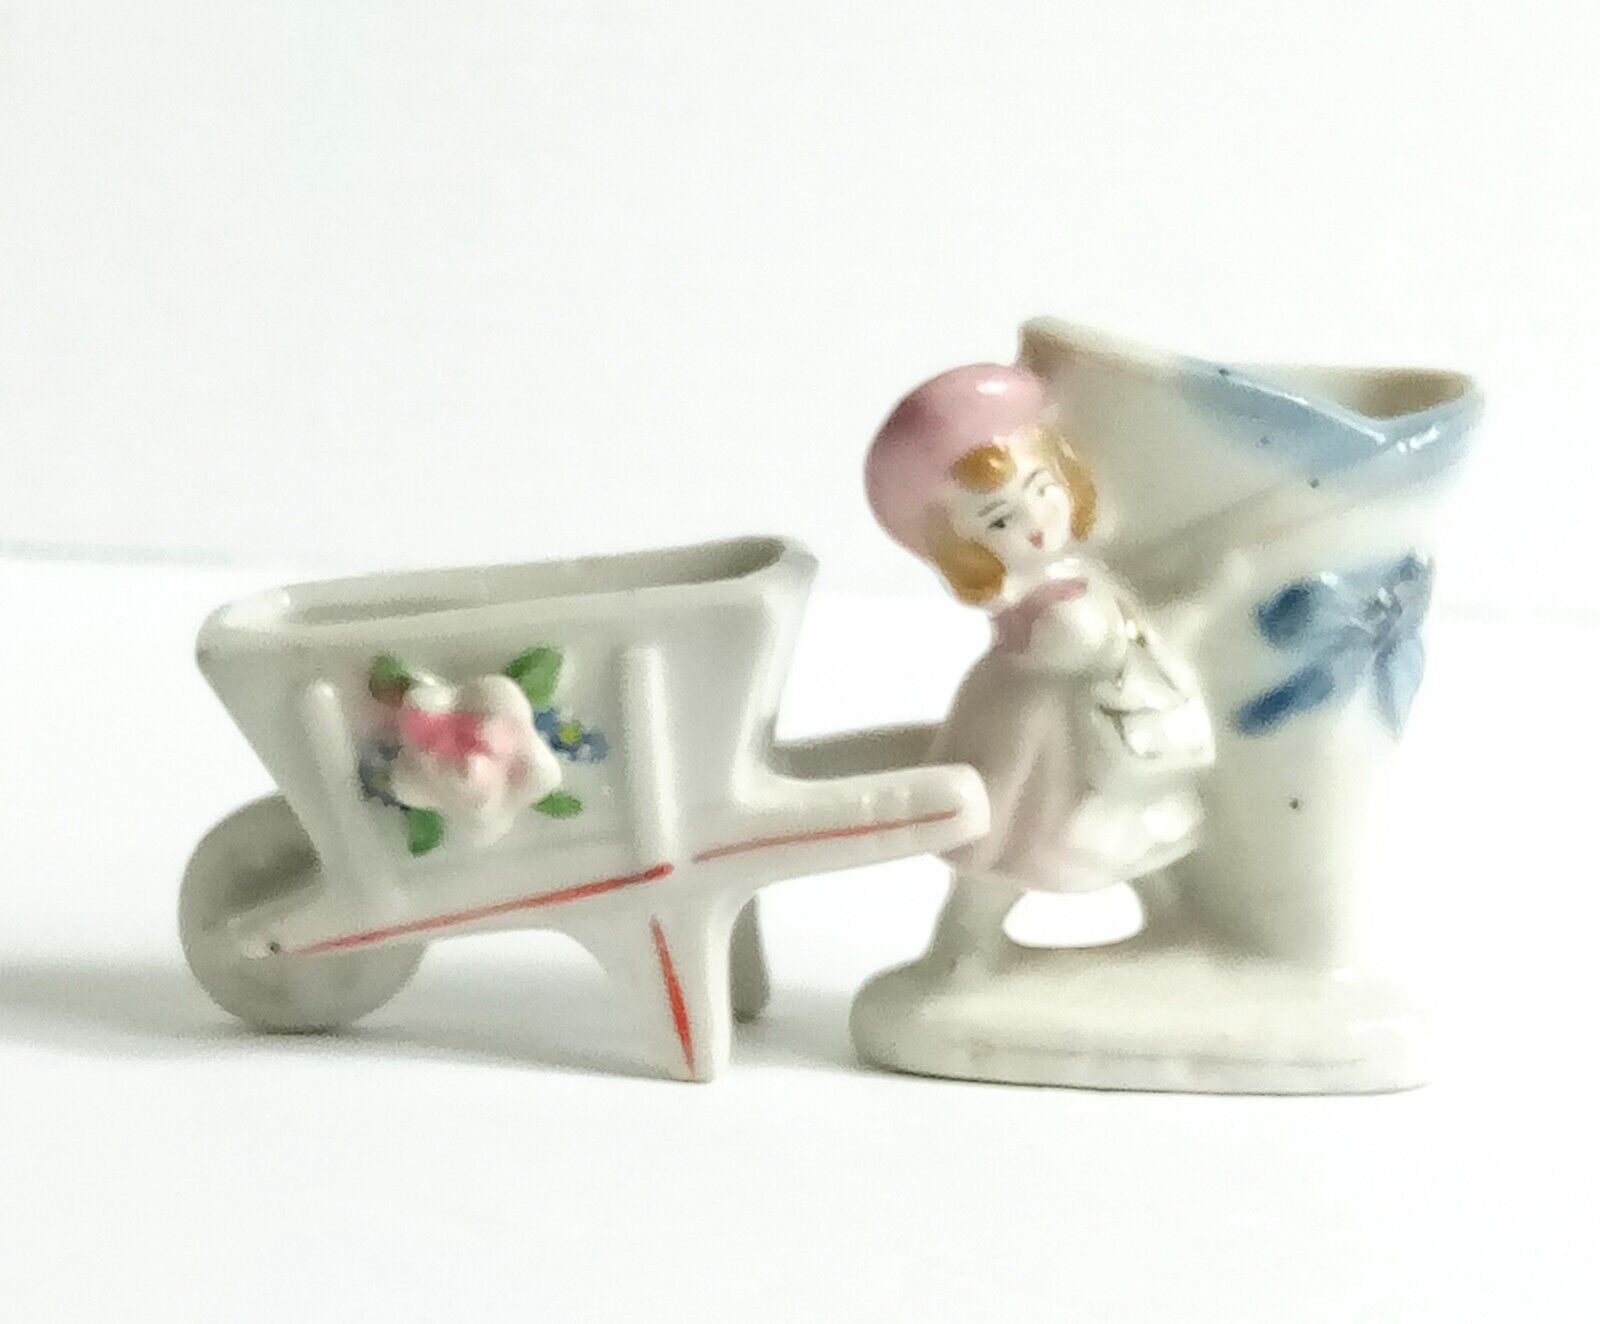 Vintage Occupied Japan Miniature Figurines Wheelbarrel Toothpick Holder